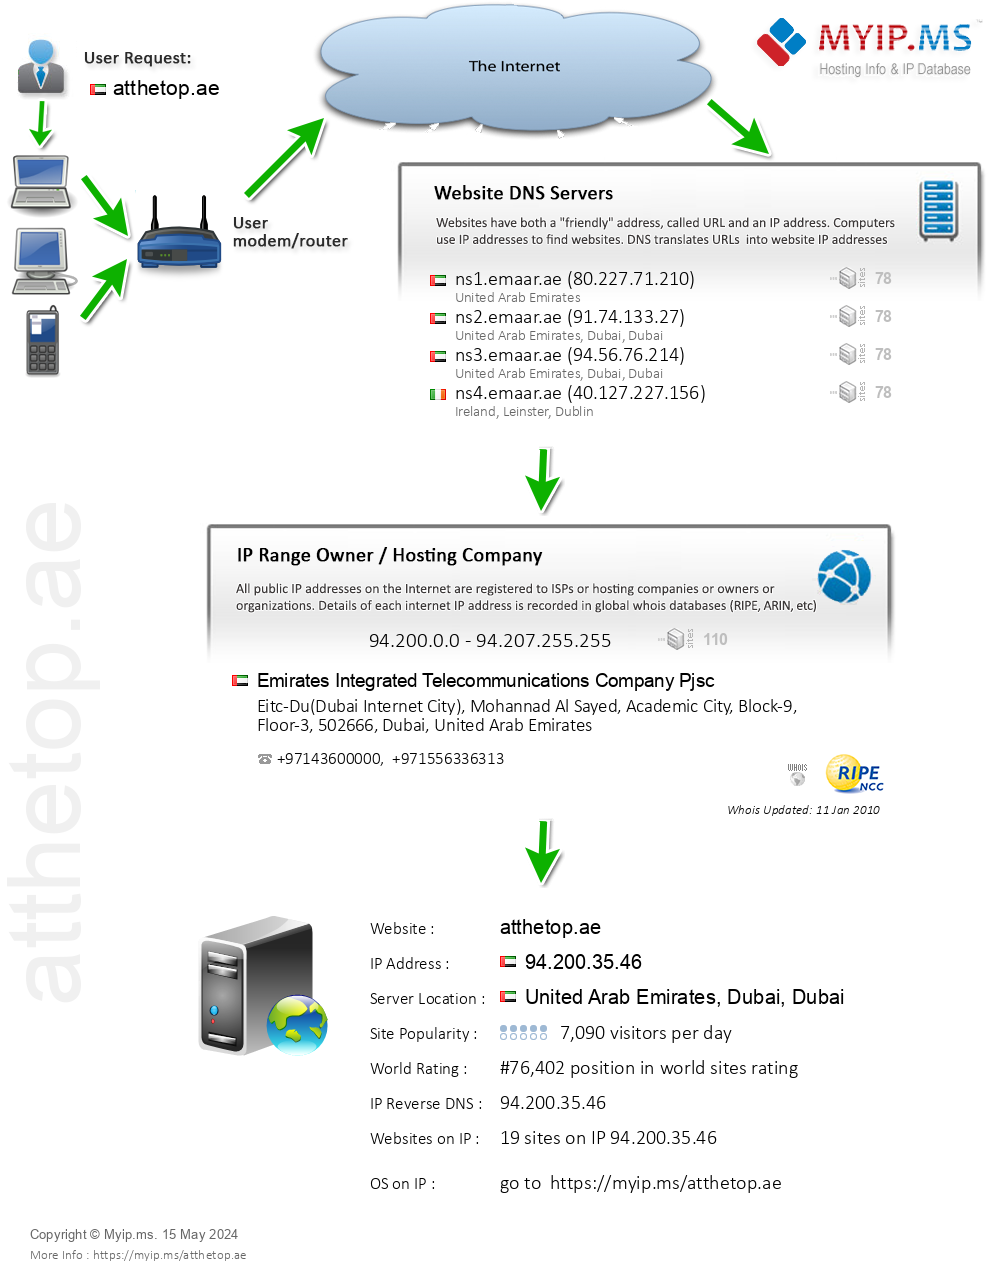 Atthetop.ae - Website Hosting Visual IP Diagram